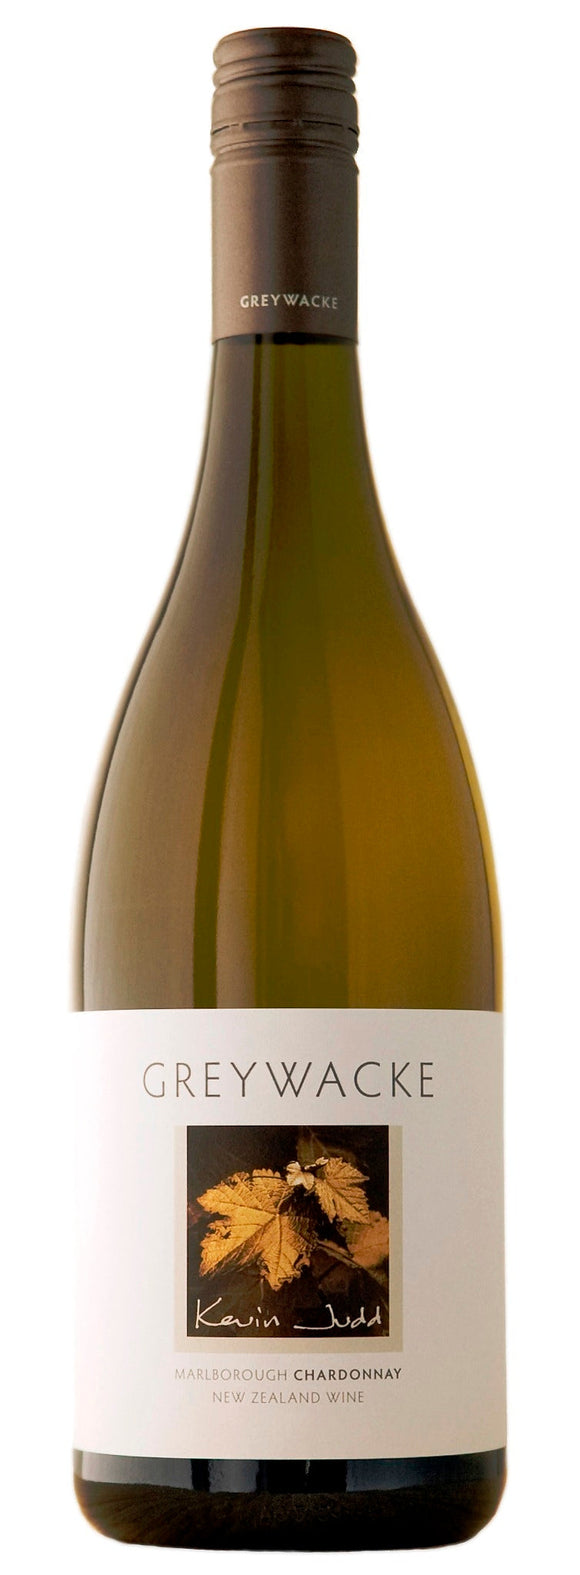 Greywacke Marlborough Chardonnay 2015